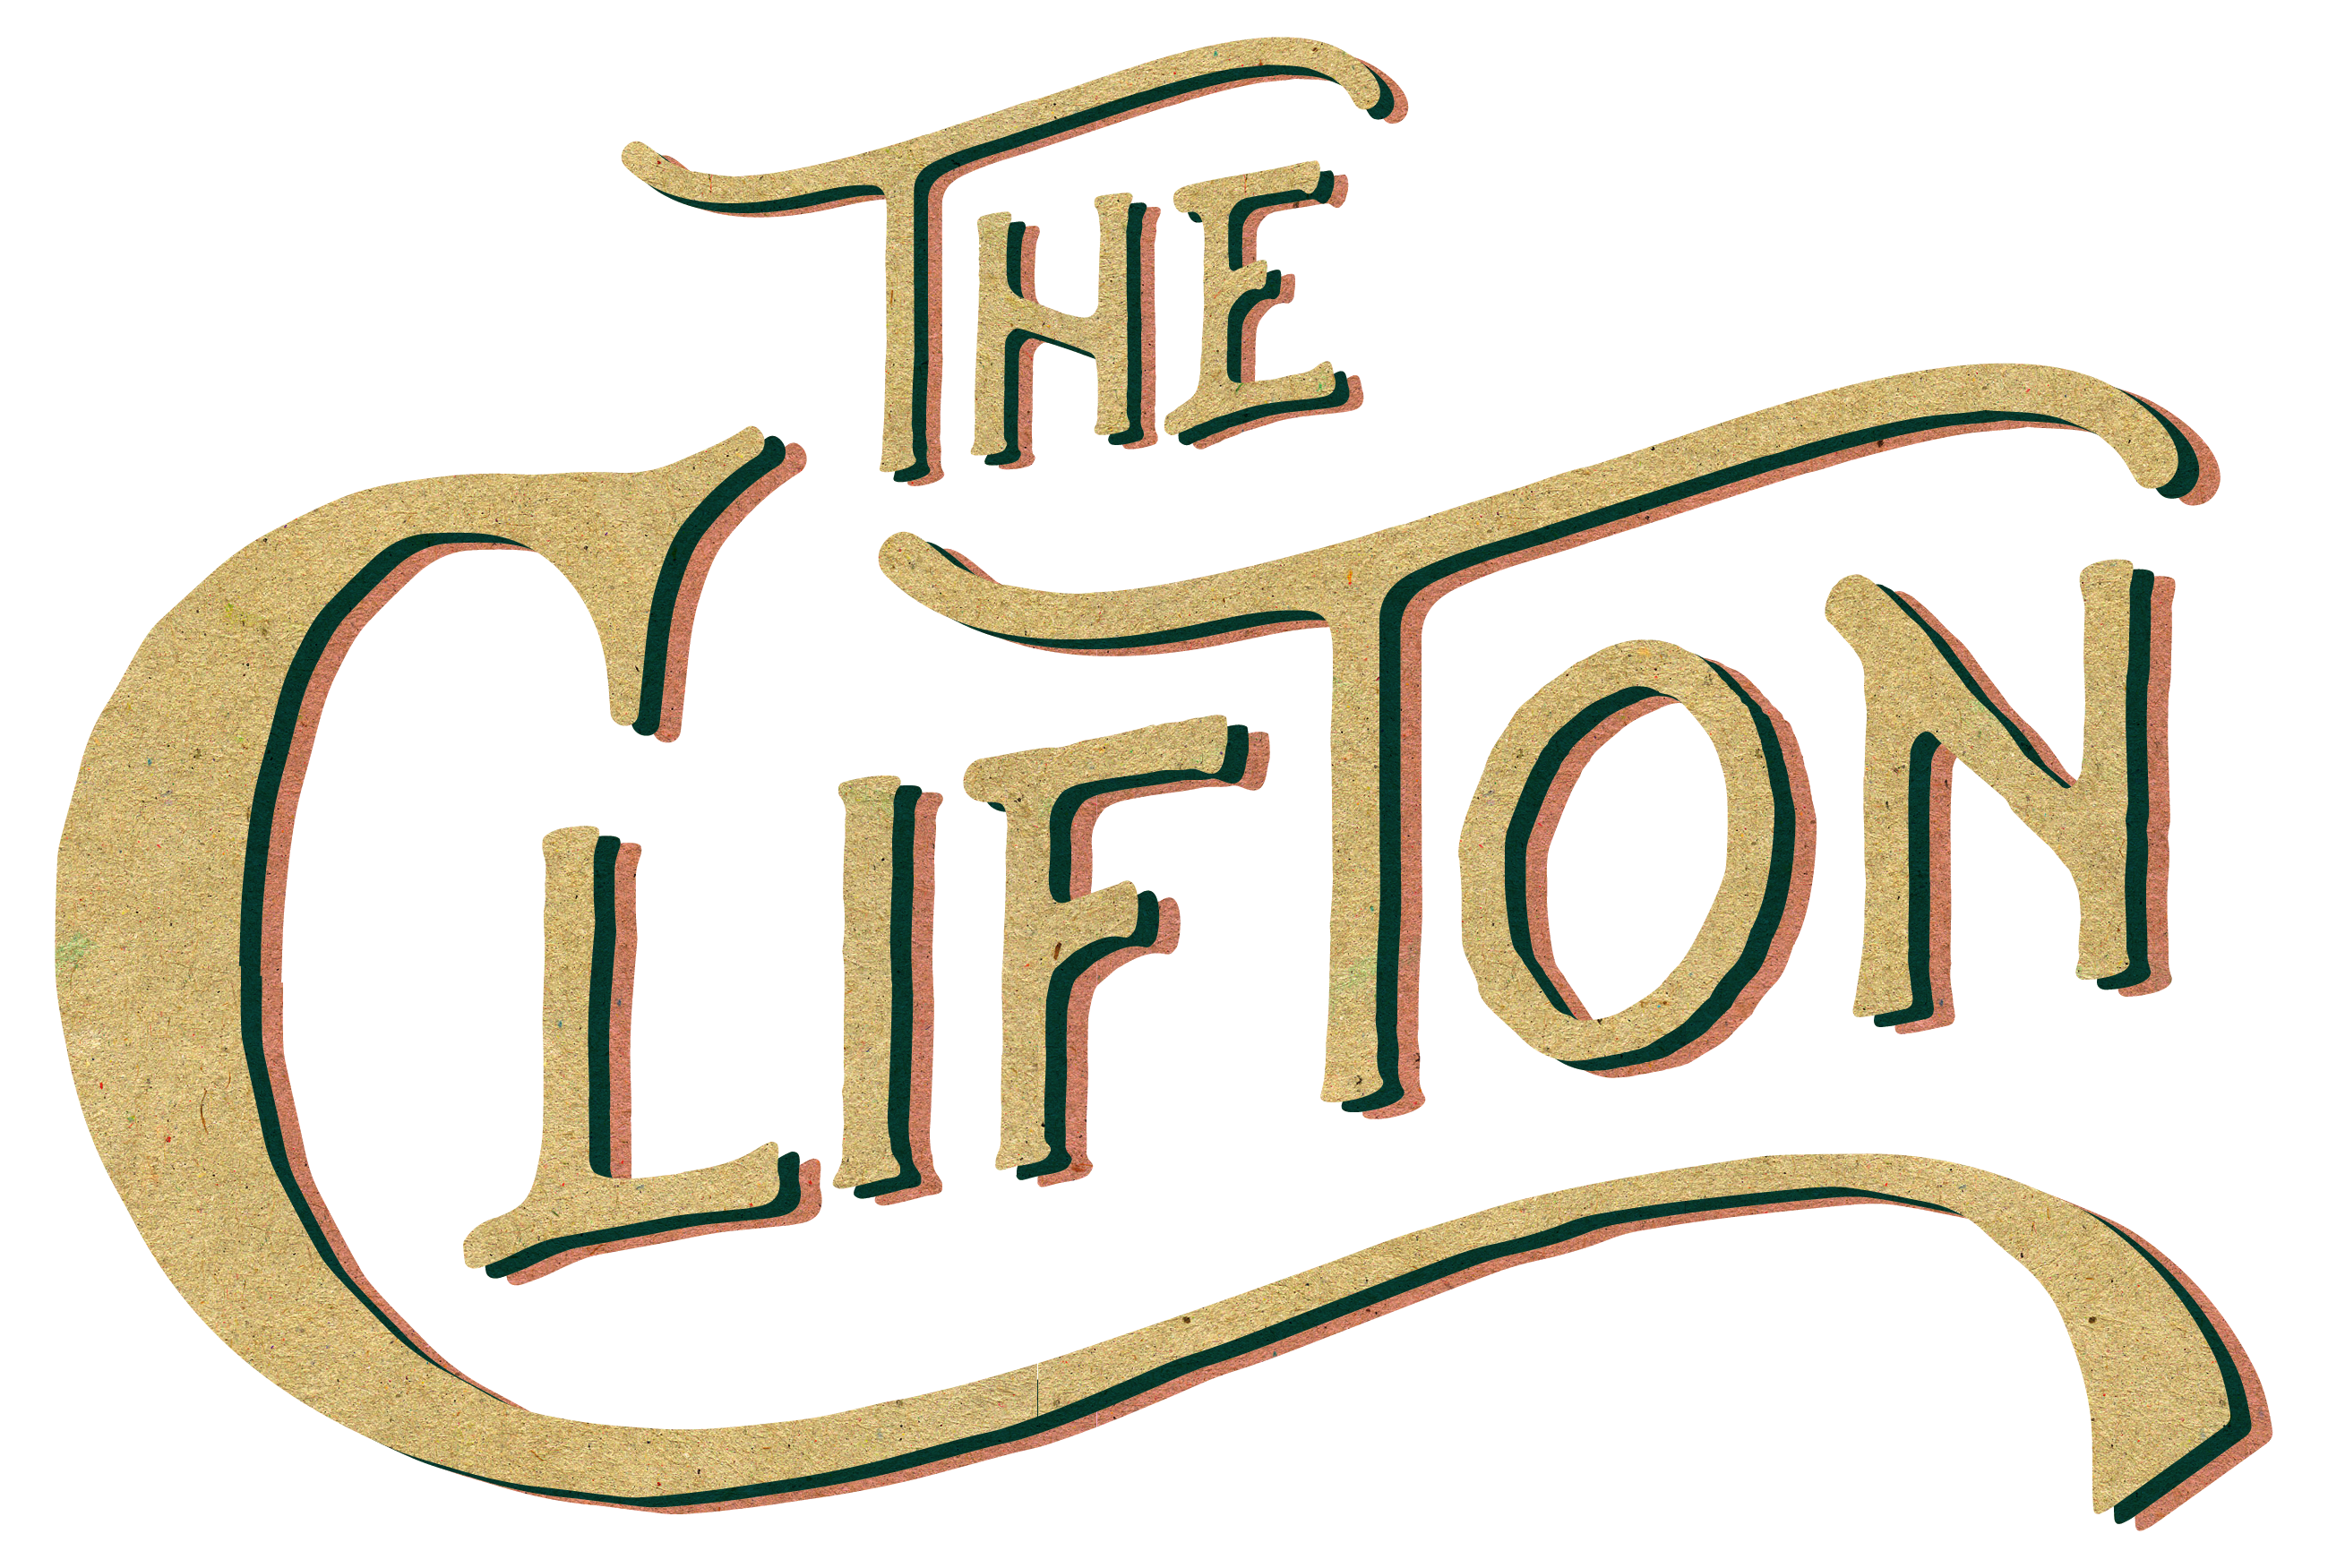 The Clifton